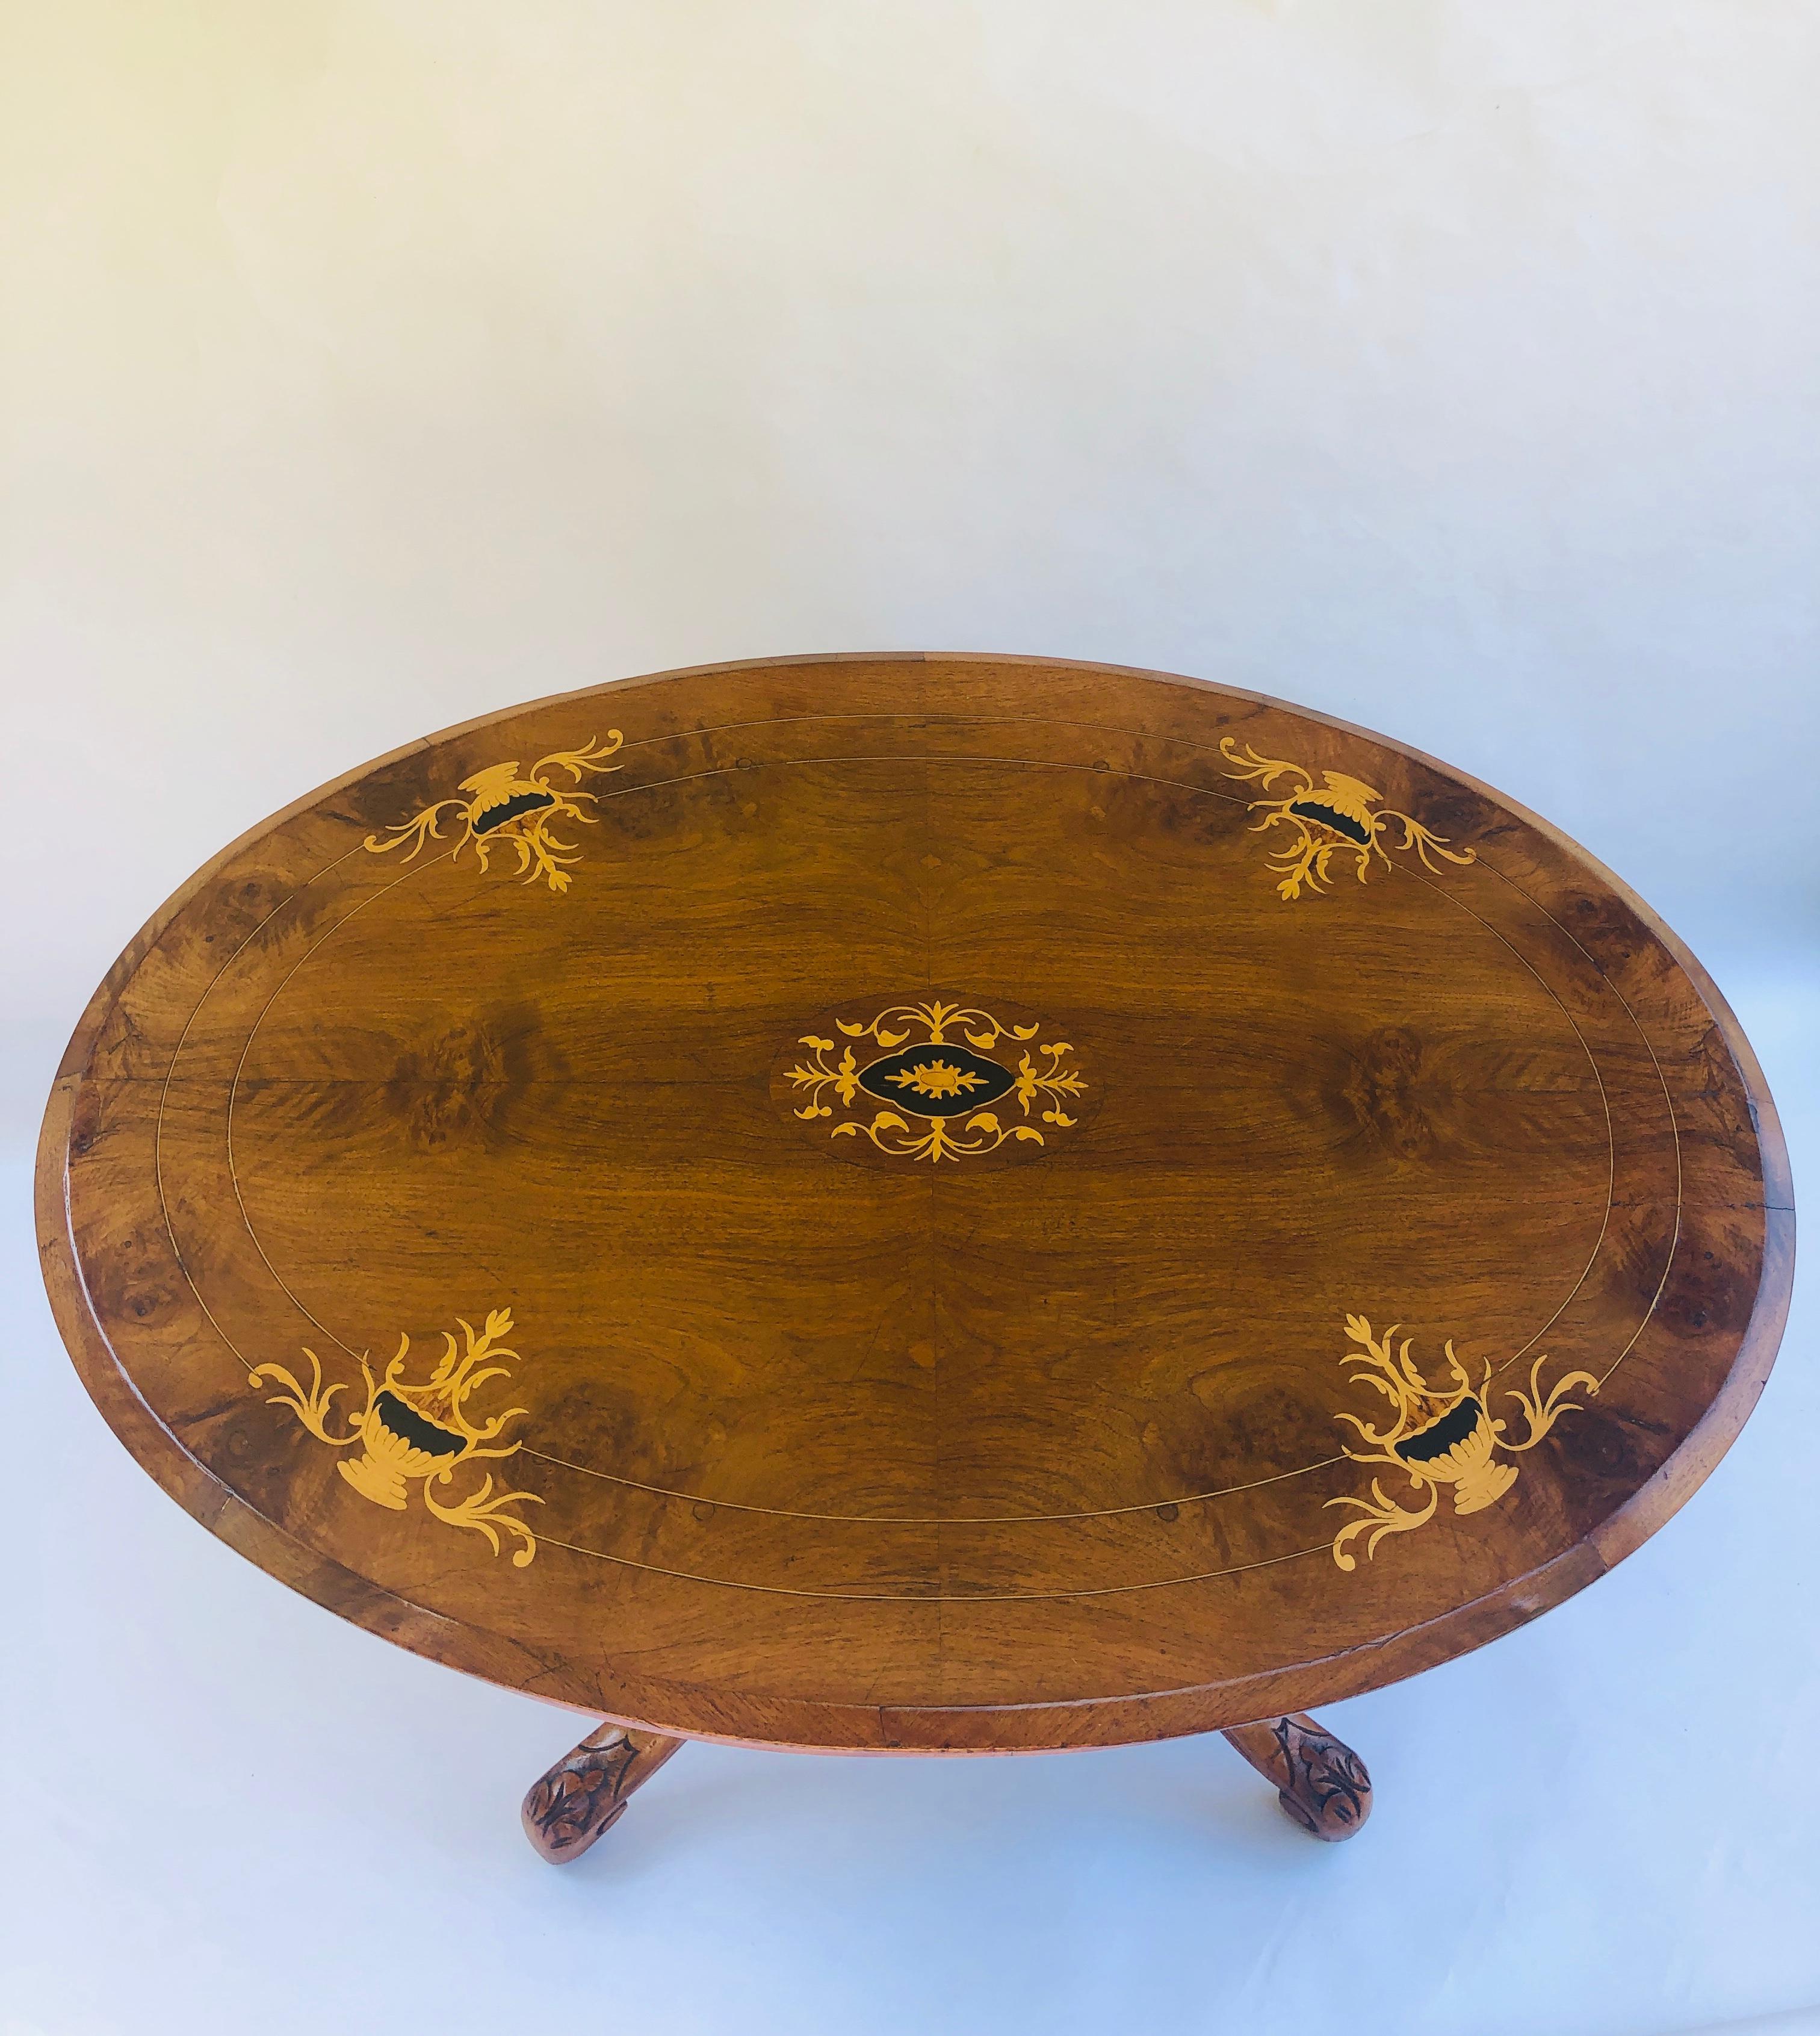 Antiker viktorianischer ovaler Tisch mit Intarsien aus Nussbaumholz, der eine charmante Nussbaumplatte mit attraktiven Buchsbaumintarsien hat. Der ovale Fries ist mit Buchsbaumbändern verziert, und der Sockel besteht aus 4 prächtig gedrechselten